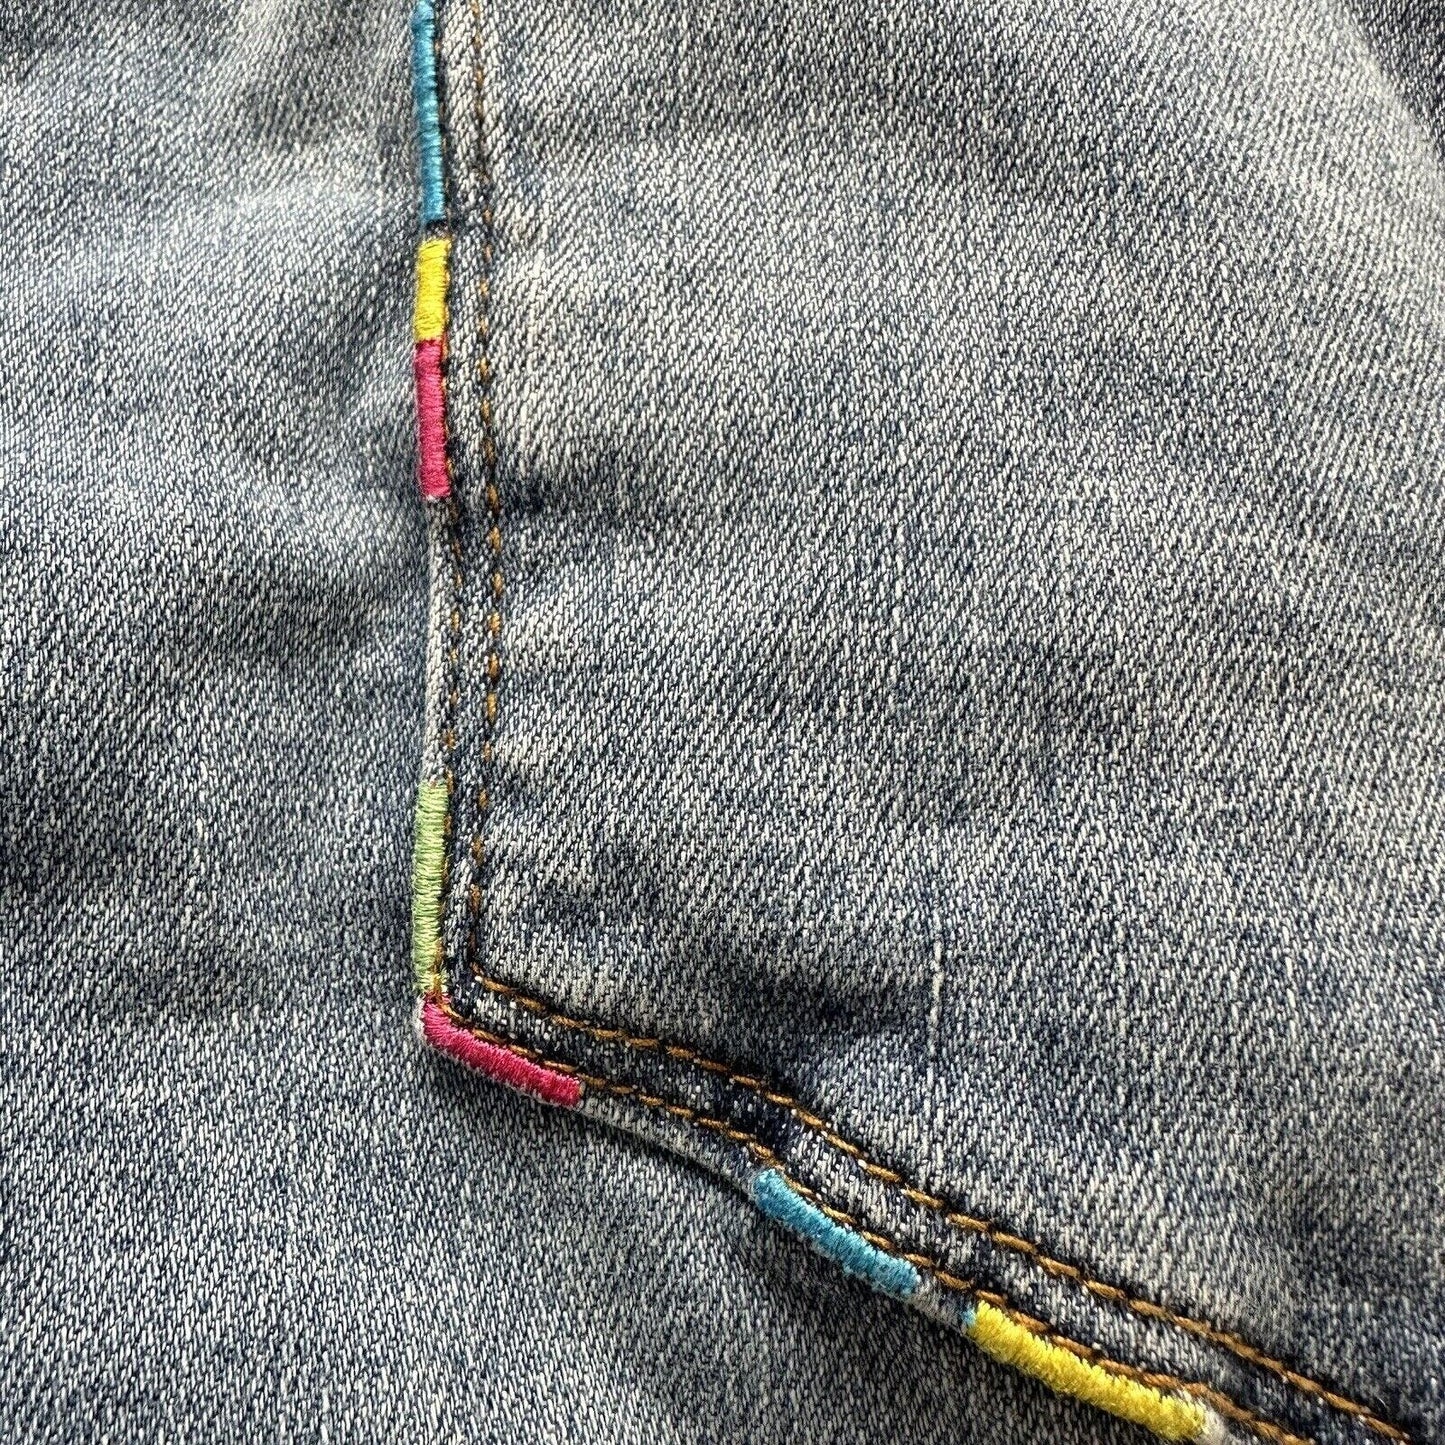 Judy Blue Jeans Womens 16W Skinny High Waist Stretch Denim Rainbow Embroidery